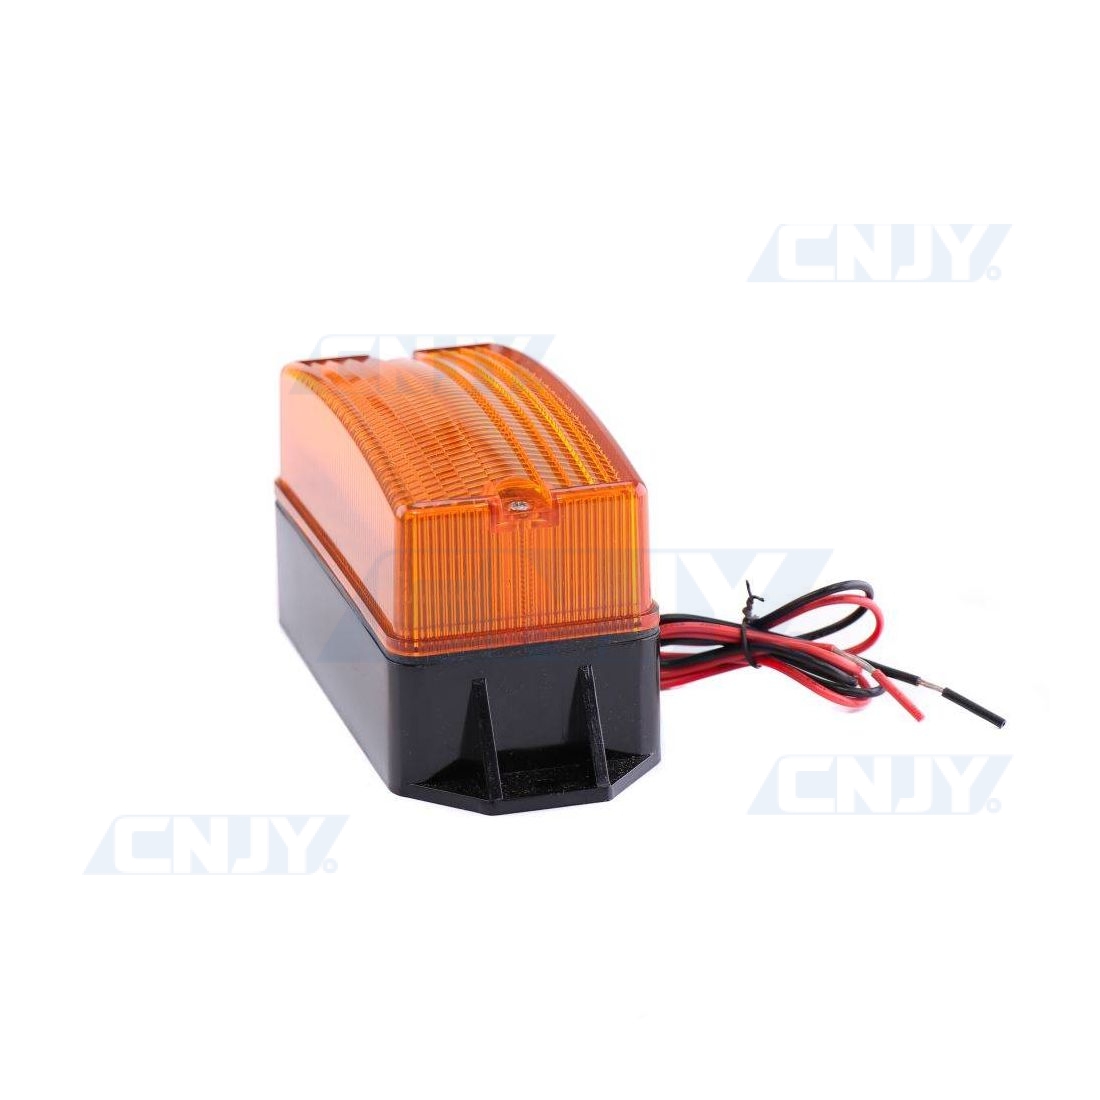 Feu clignotant LED Hiltron pour portails automatiques 230V orange LUX230A